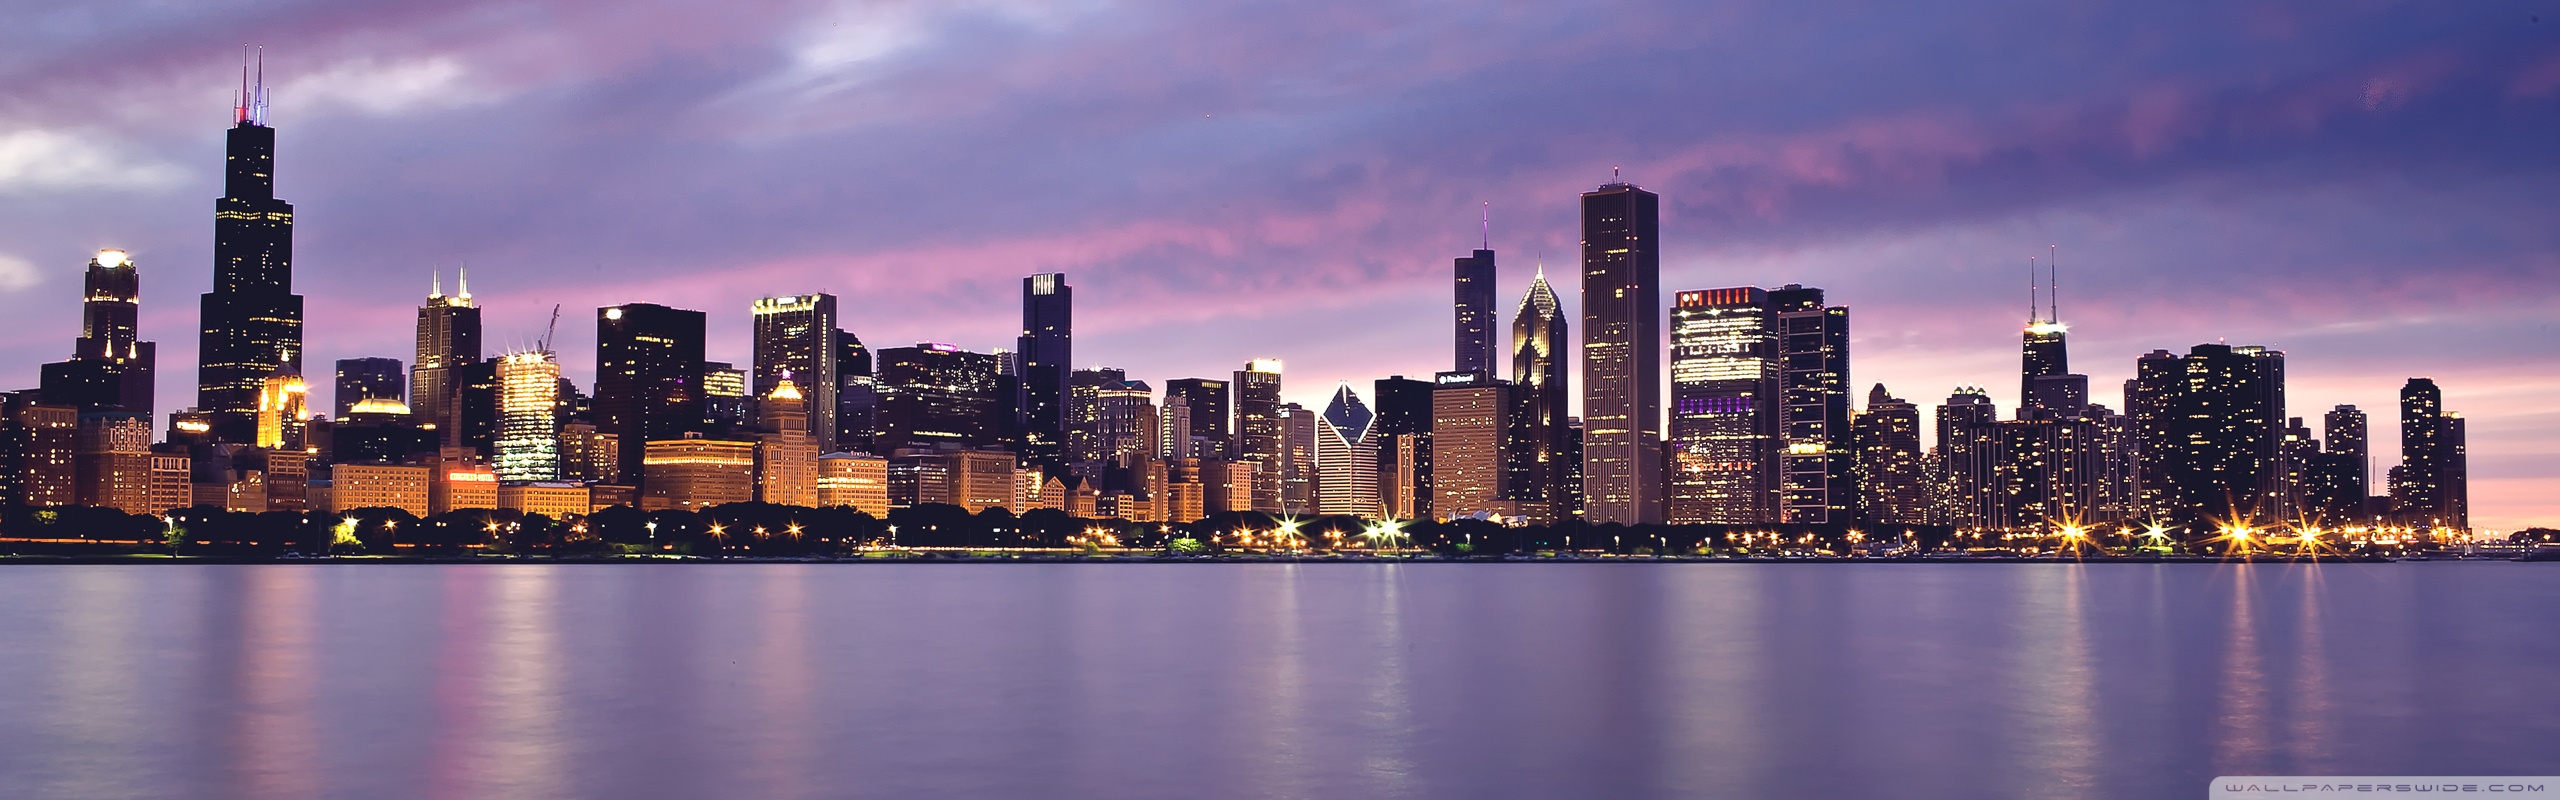 Chicago Dual Monitor Wallpapers: Chào mừng đến thành phố của tình yêu và văn hóa. Với những hình nền dual monitor ấn tượng về Chicago, bạn sẽ được đưa đến phong cảnh đẹp nhất của thành phố. Tìm kiếm hình ảnh để đưa bạn đến thế giới náo nhiệt của Chicago.